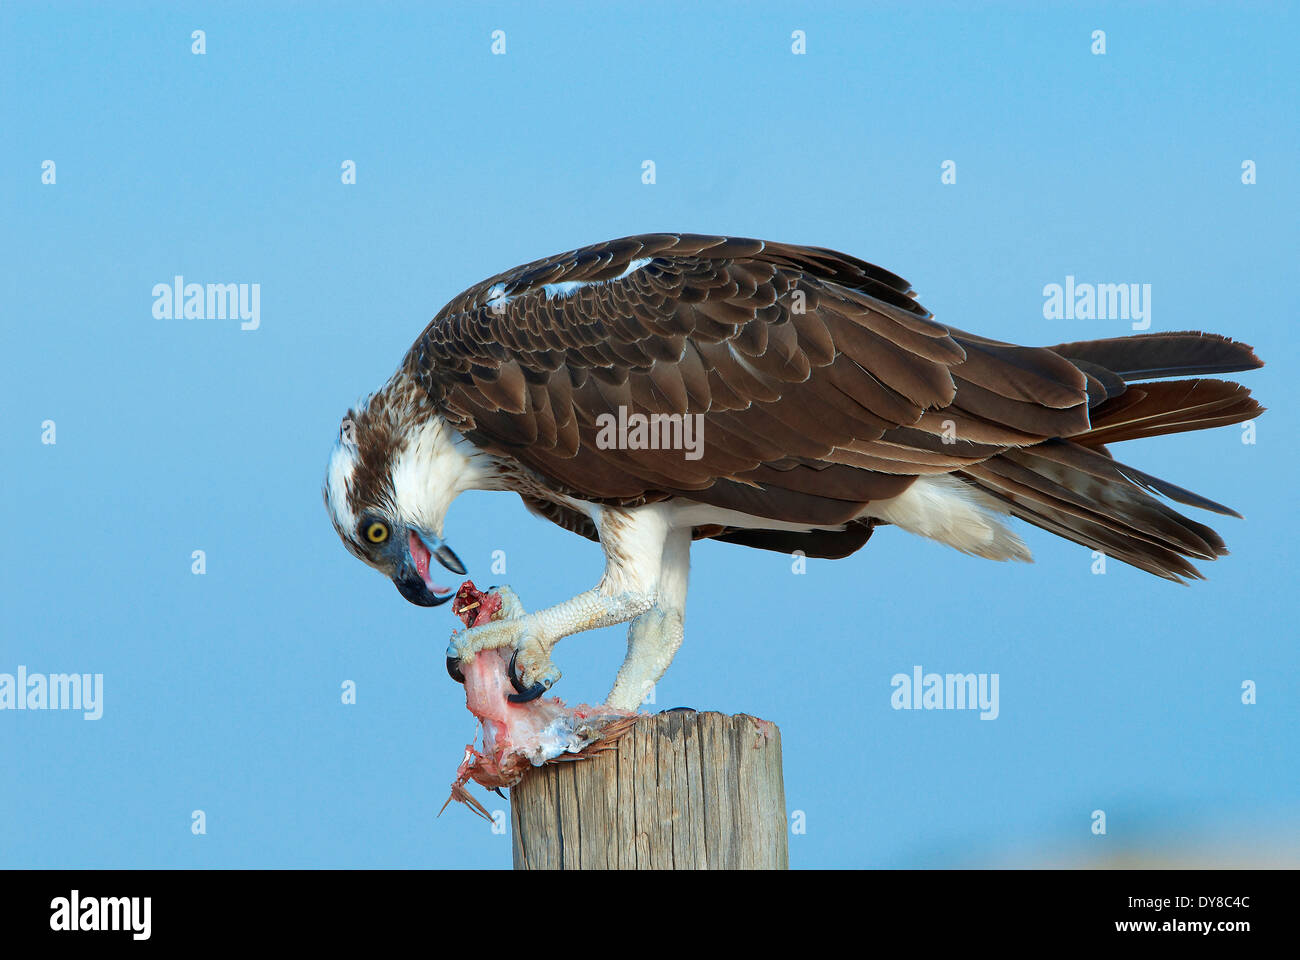 Eagle, Australia, cape Leveque, pesce, animali, uccelli, Western Australia, preda, mangiare Foto Stock